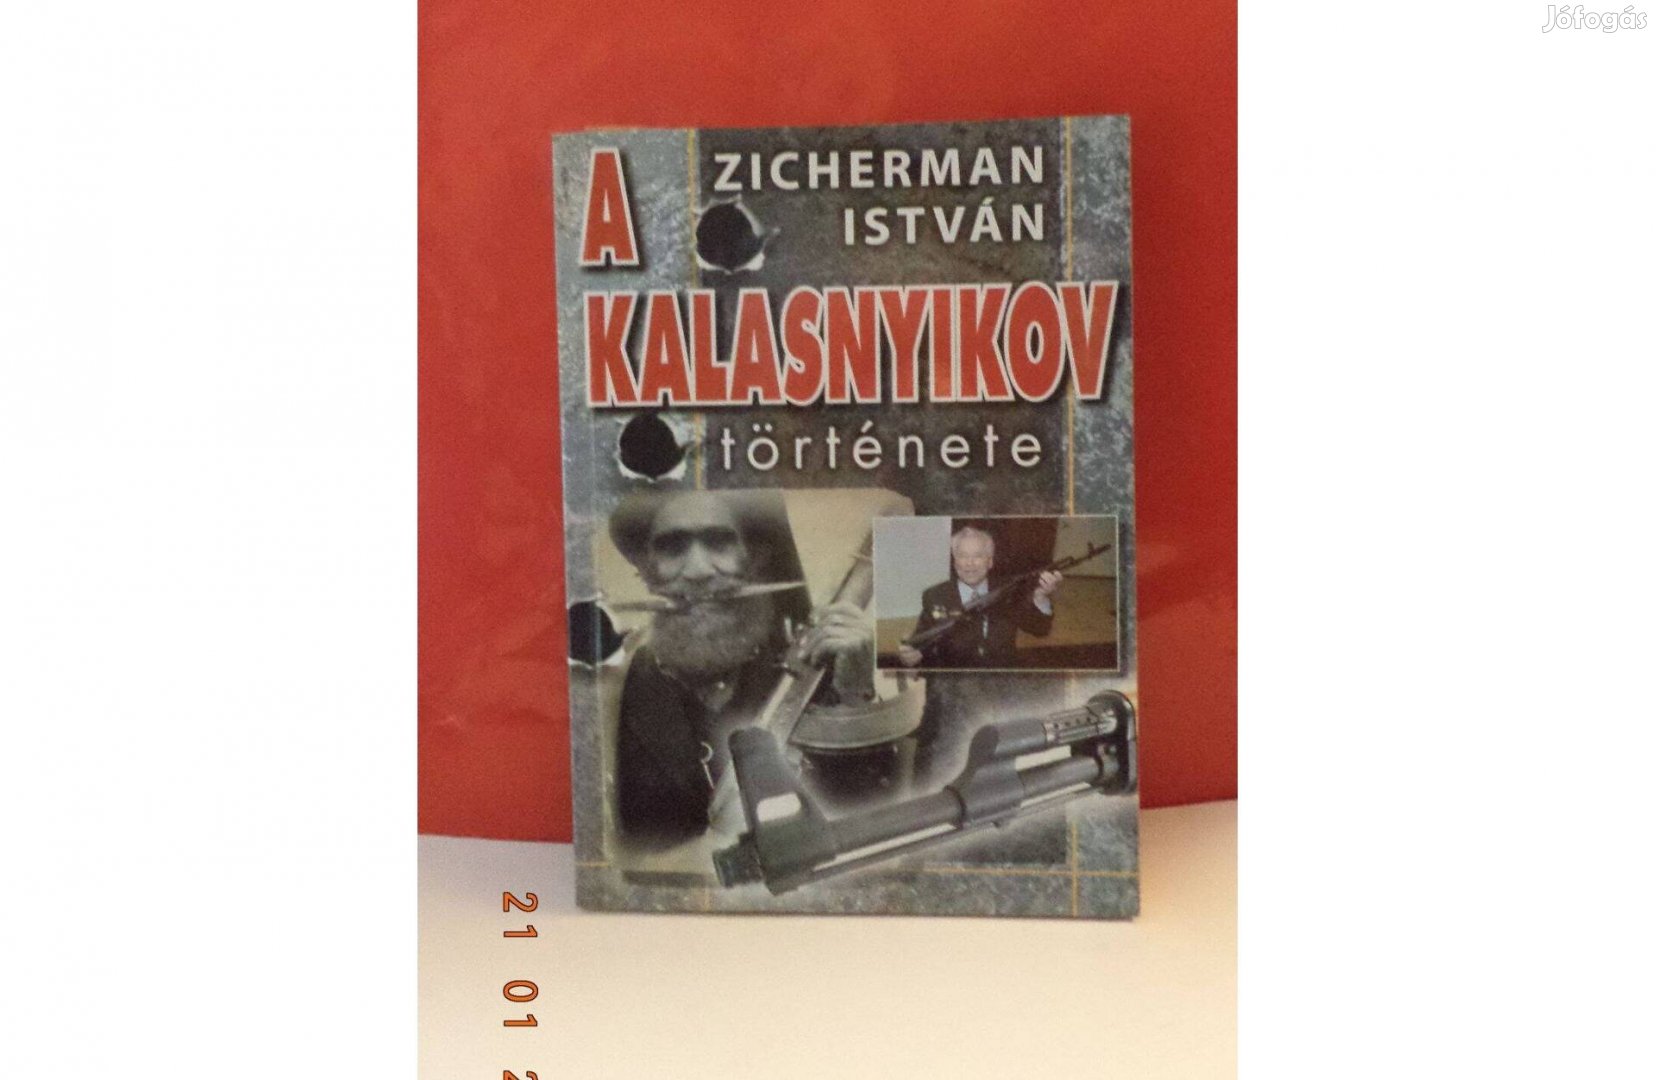 Zichermann István: A Kalasnyikov története